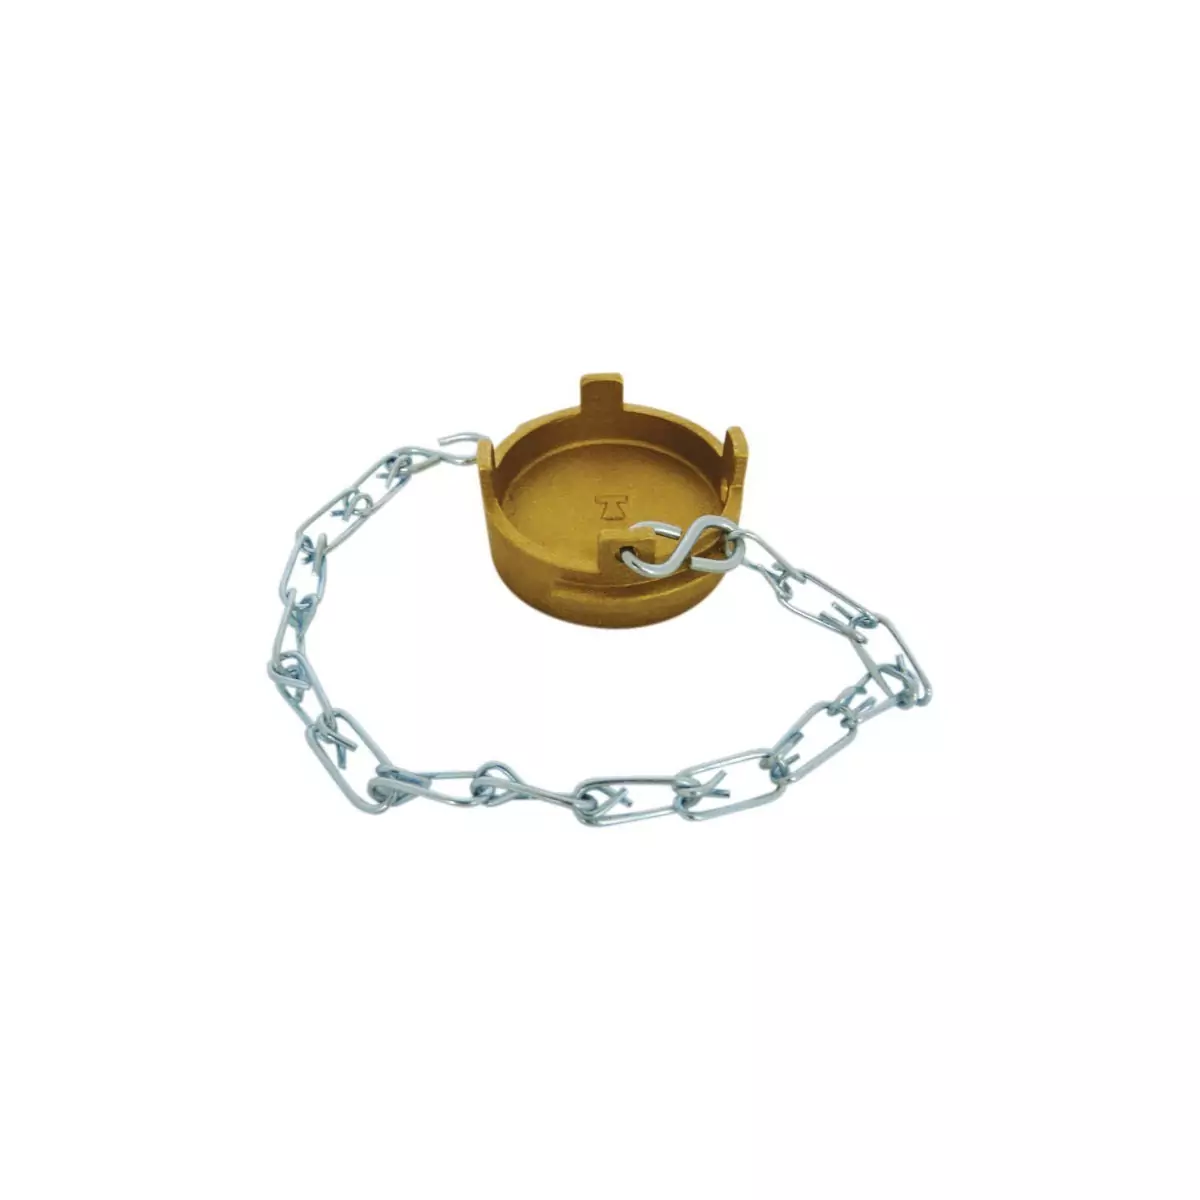 Bouchon symétrique Guillemin plat type irrigation cadenassable avec chaînette en alliages cuivreux